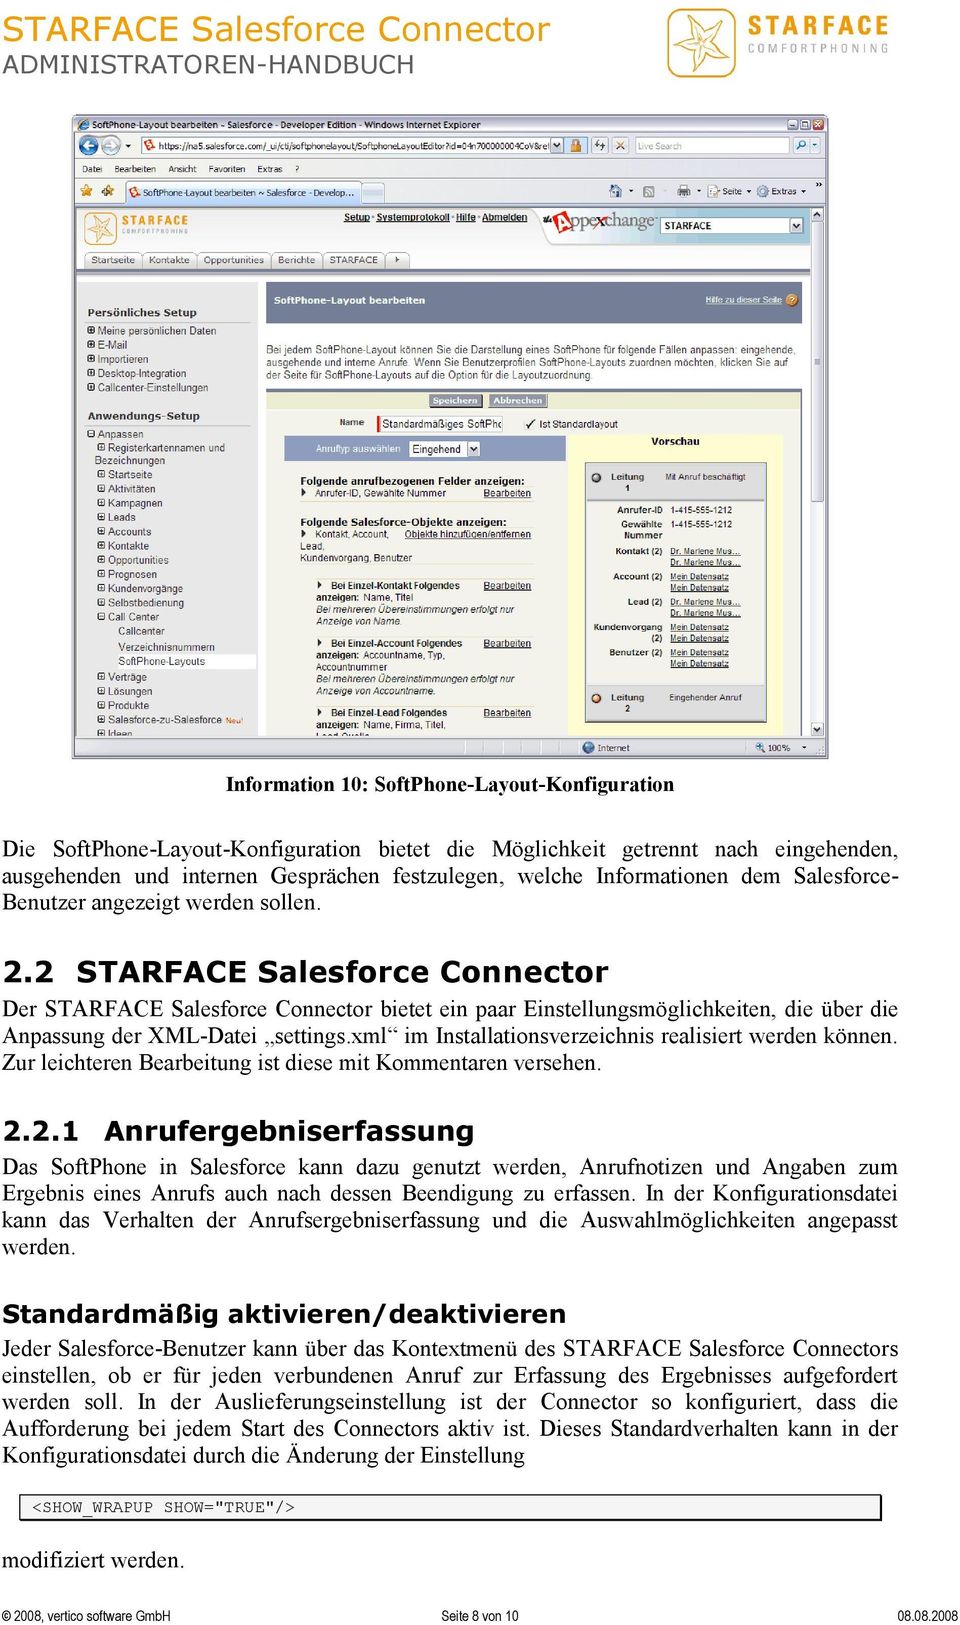 2 STARFACE Salesforce Connector Der STARFACE Salesforce Connector bietet ein paar Einstellungsmöglichkeiten, die über die Anpassung der XML-Datei settings.